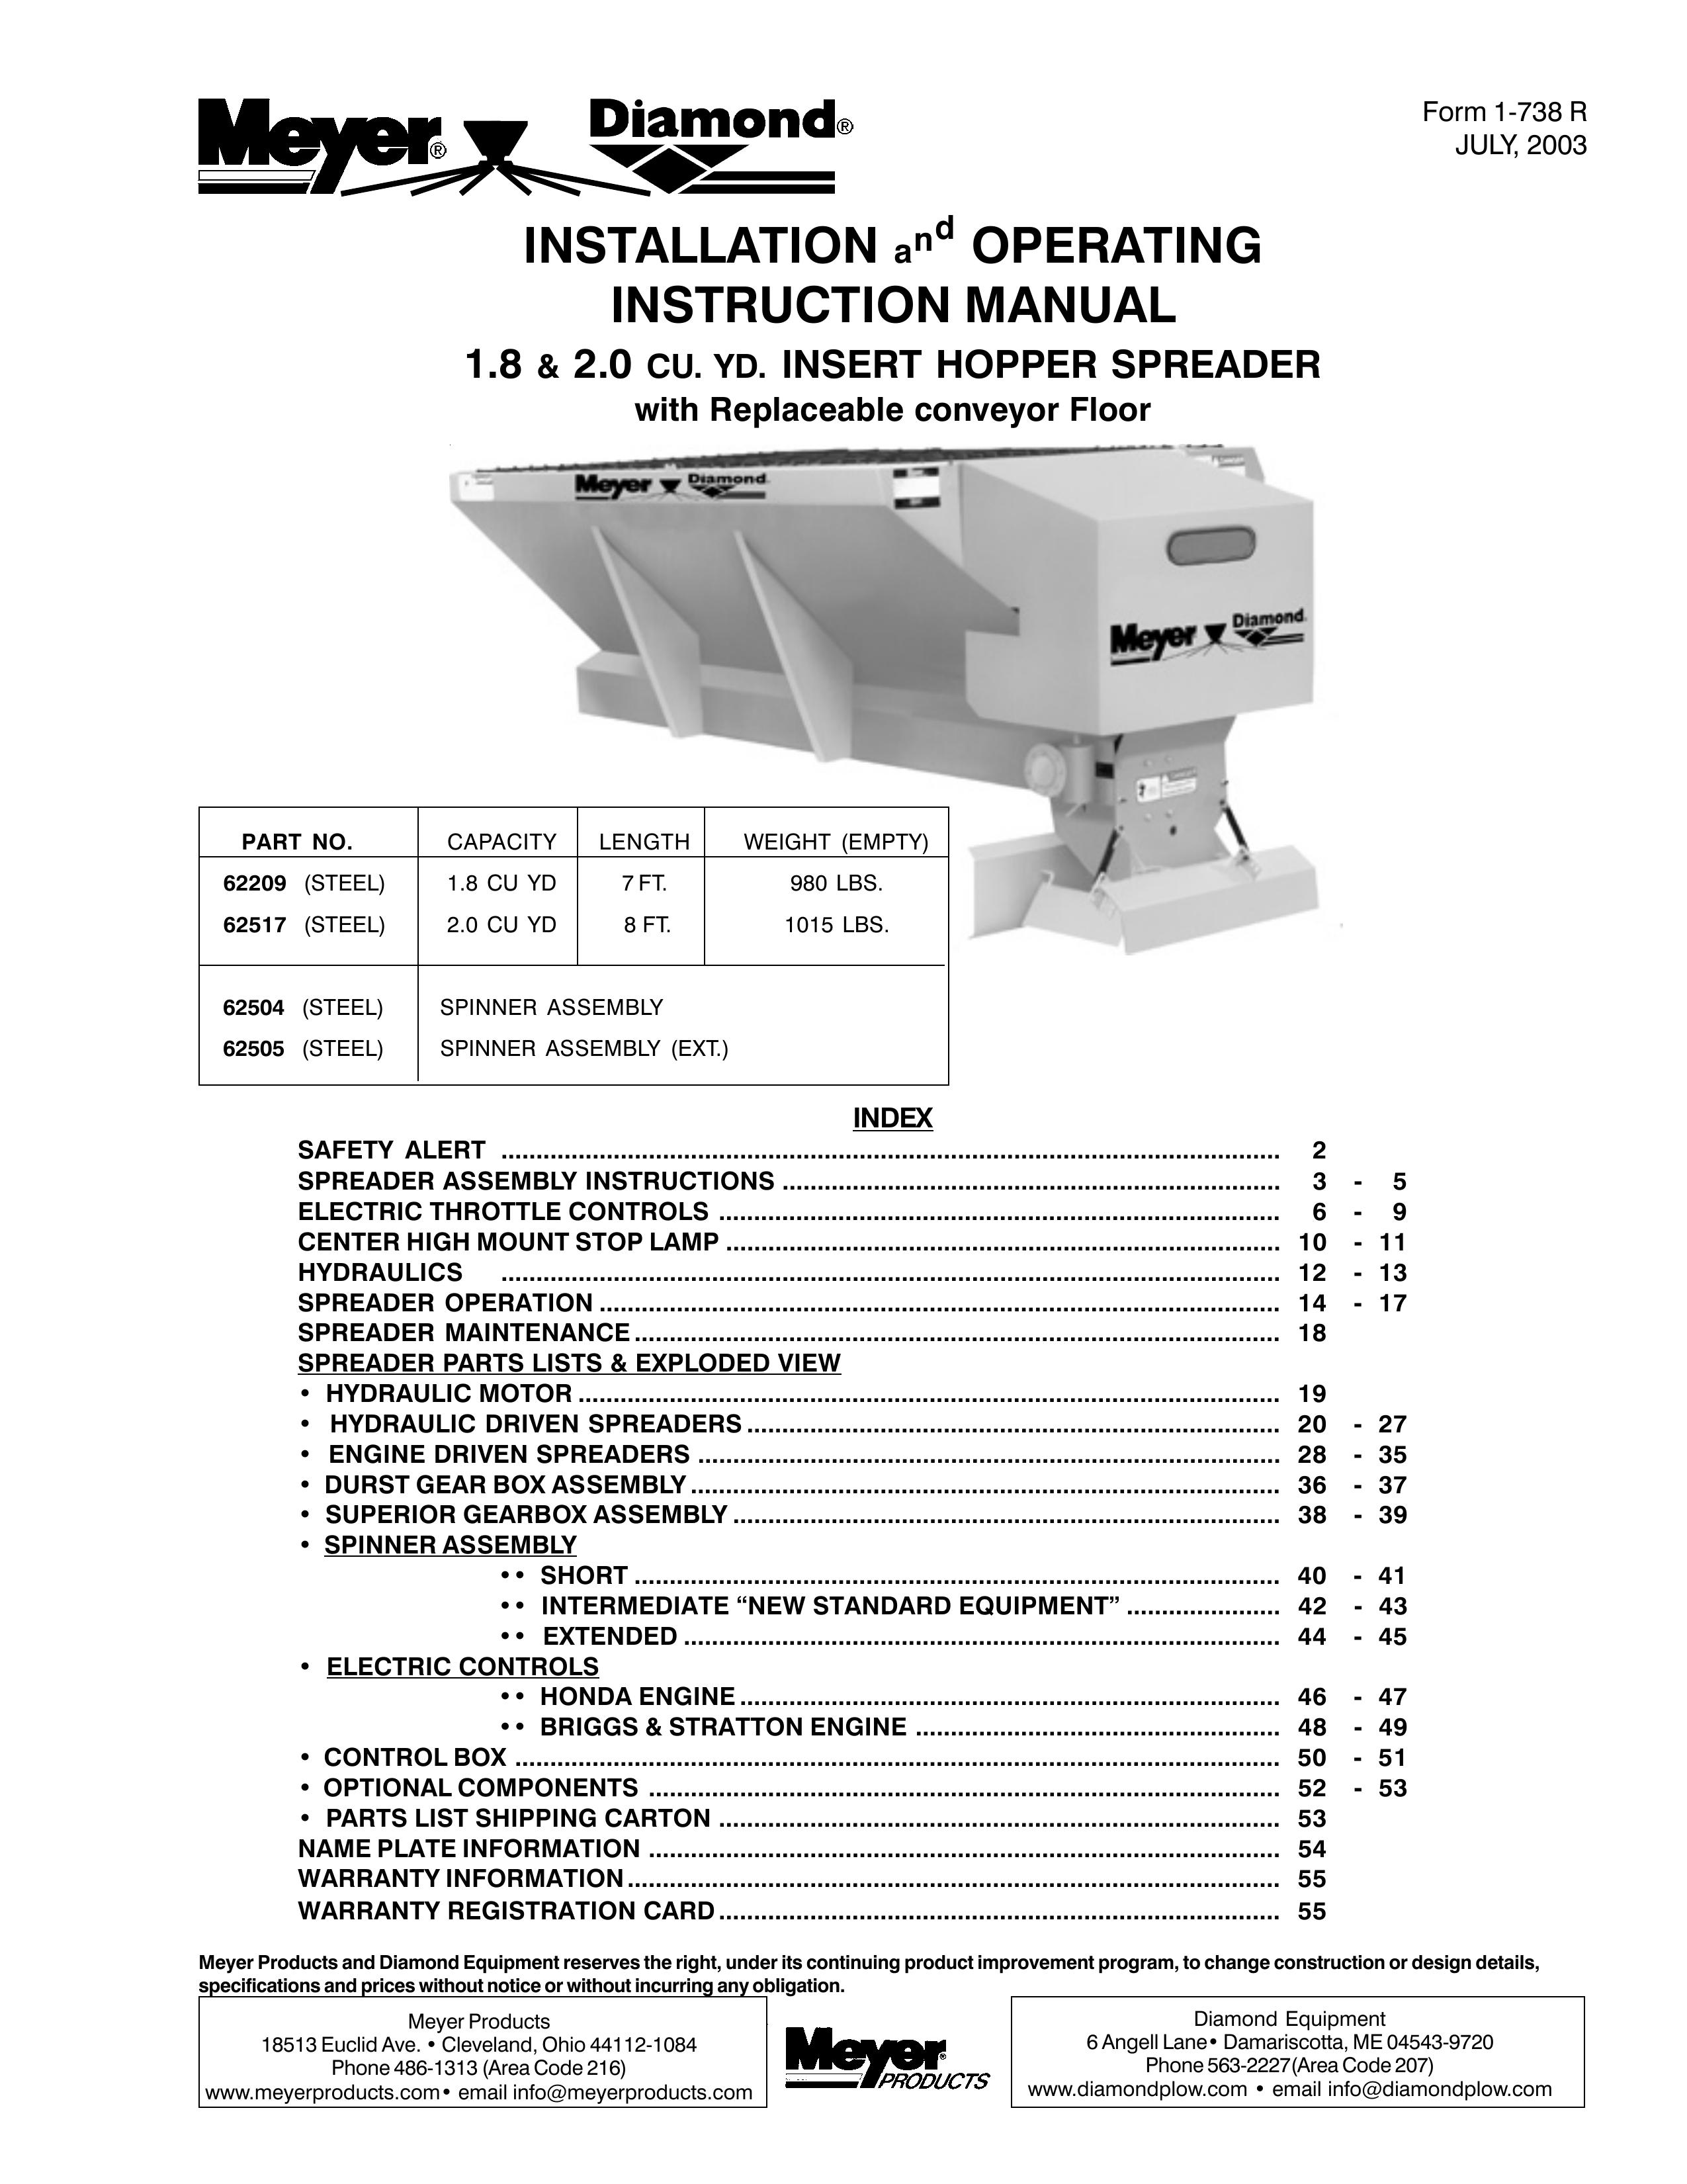 Meyer 62505 Spreader User Manual